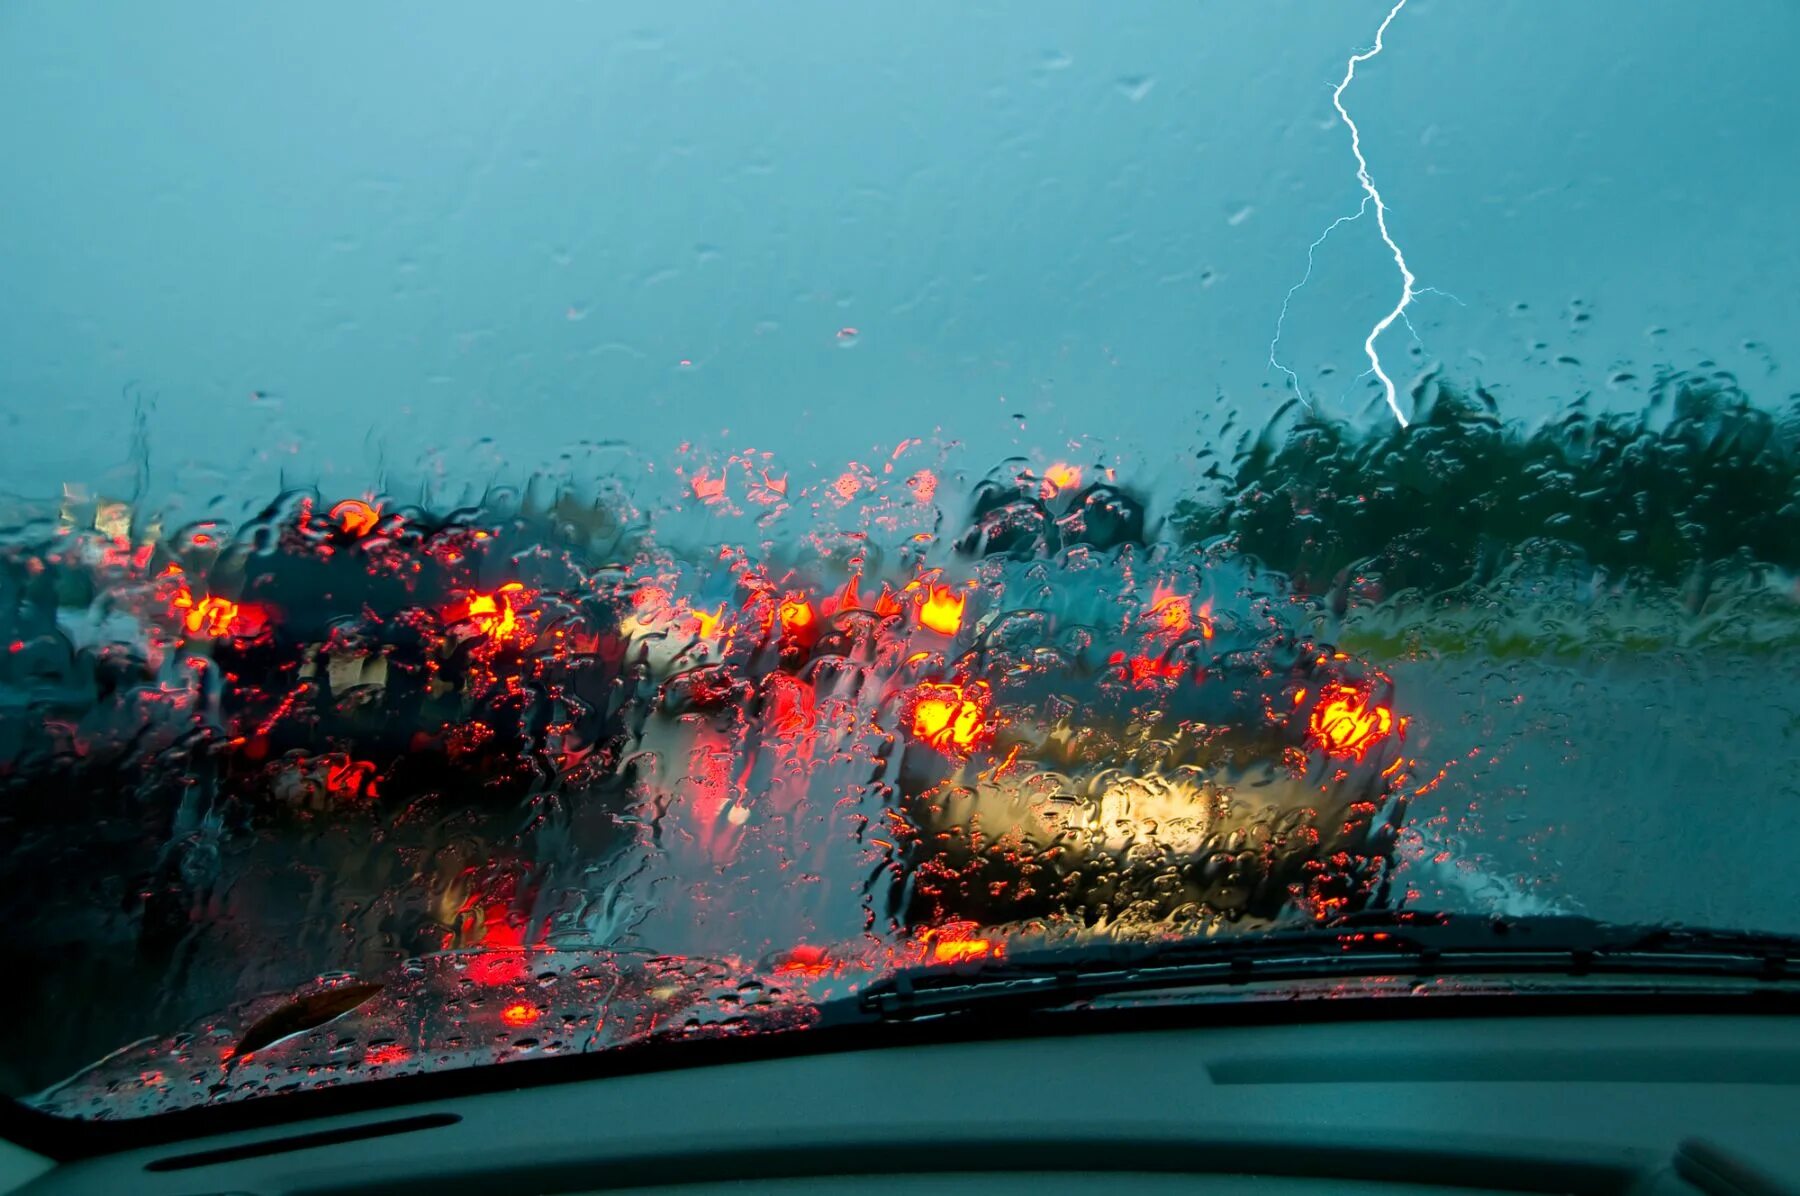 Авто в дождь. Вождение в дождь. Машина под дождем. Езда в ливень на автомобиле. Driver rain